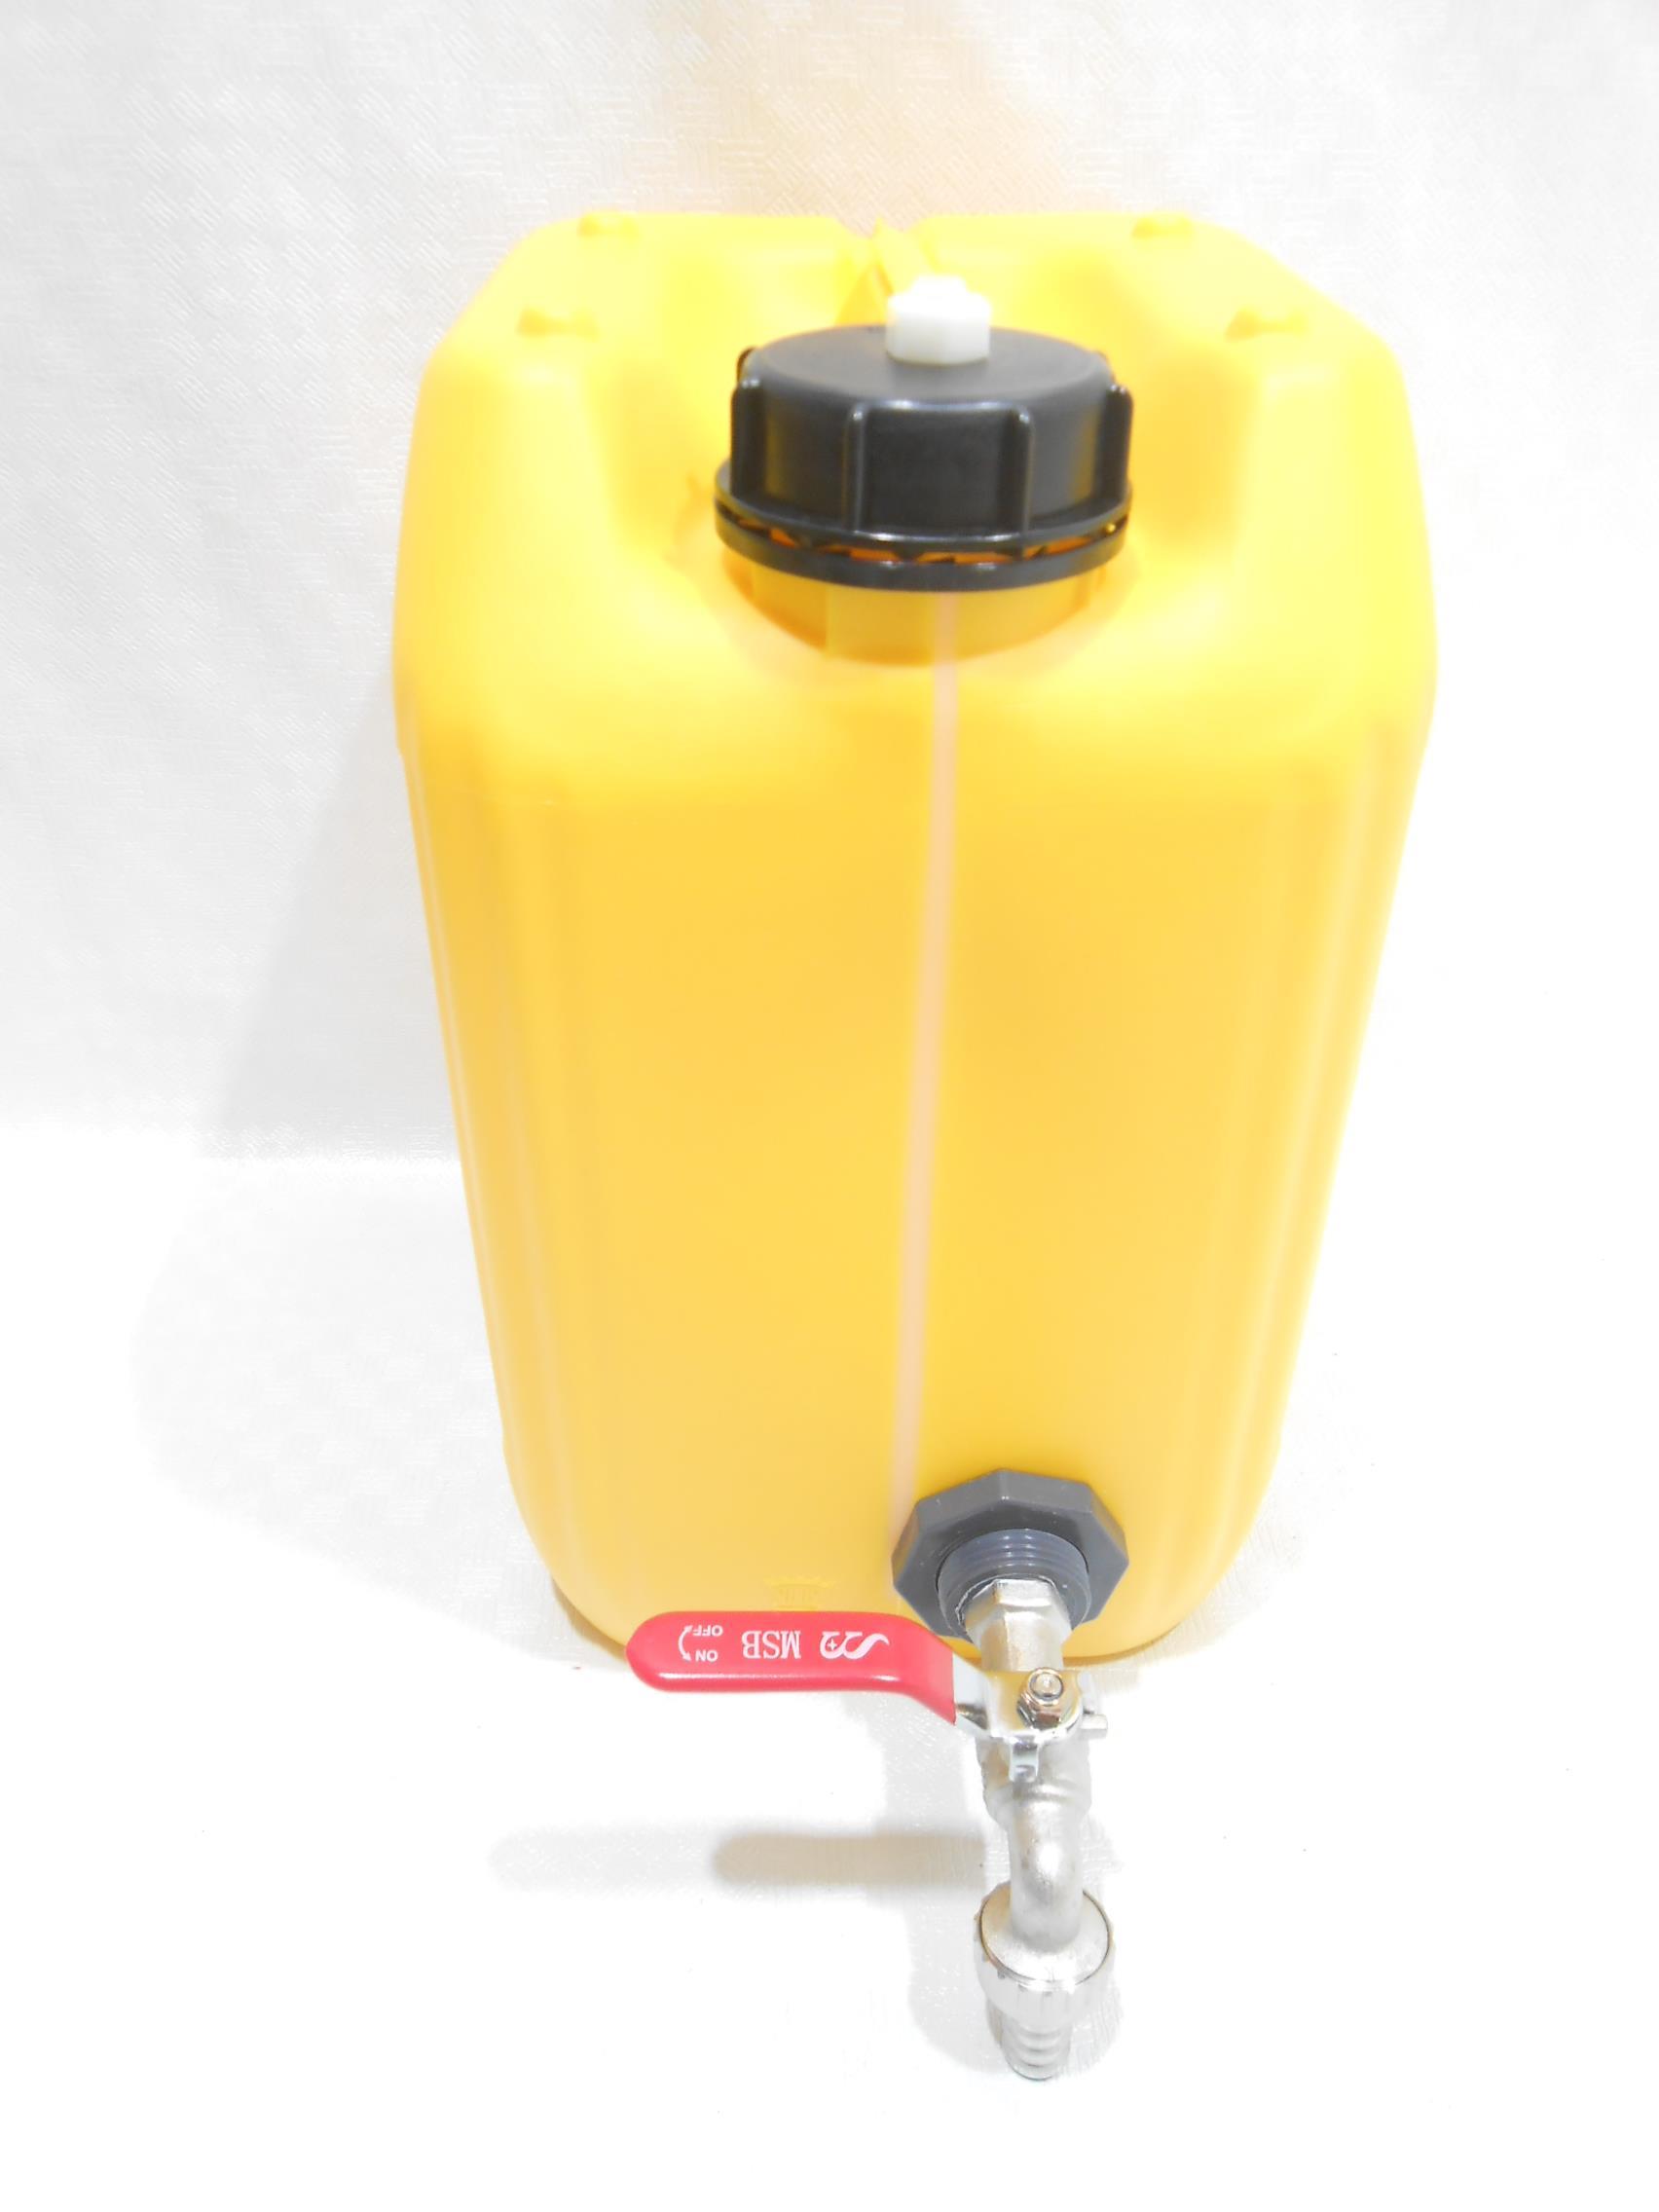 מיכל עם ברז כדורי ונשם חד כיווני אוטומטי ג'ריקן 11 ליטר צבע צהוב למים קמפינג לייף